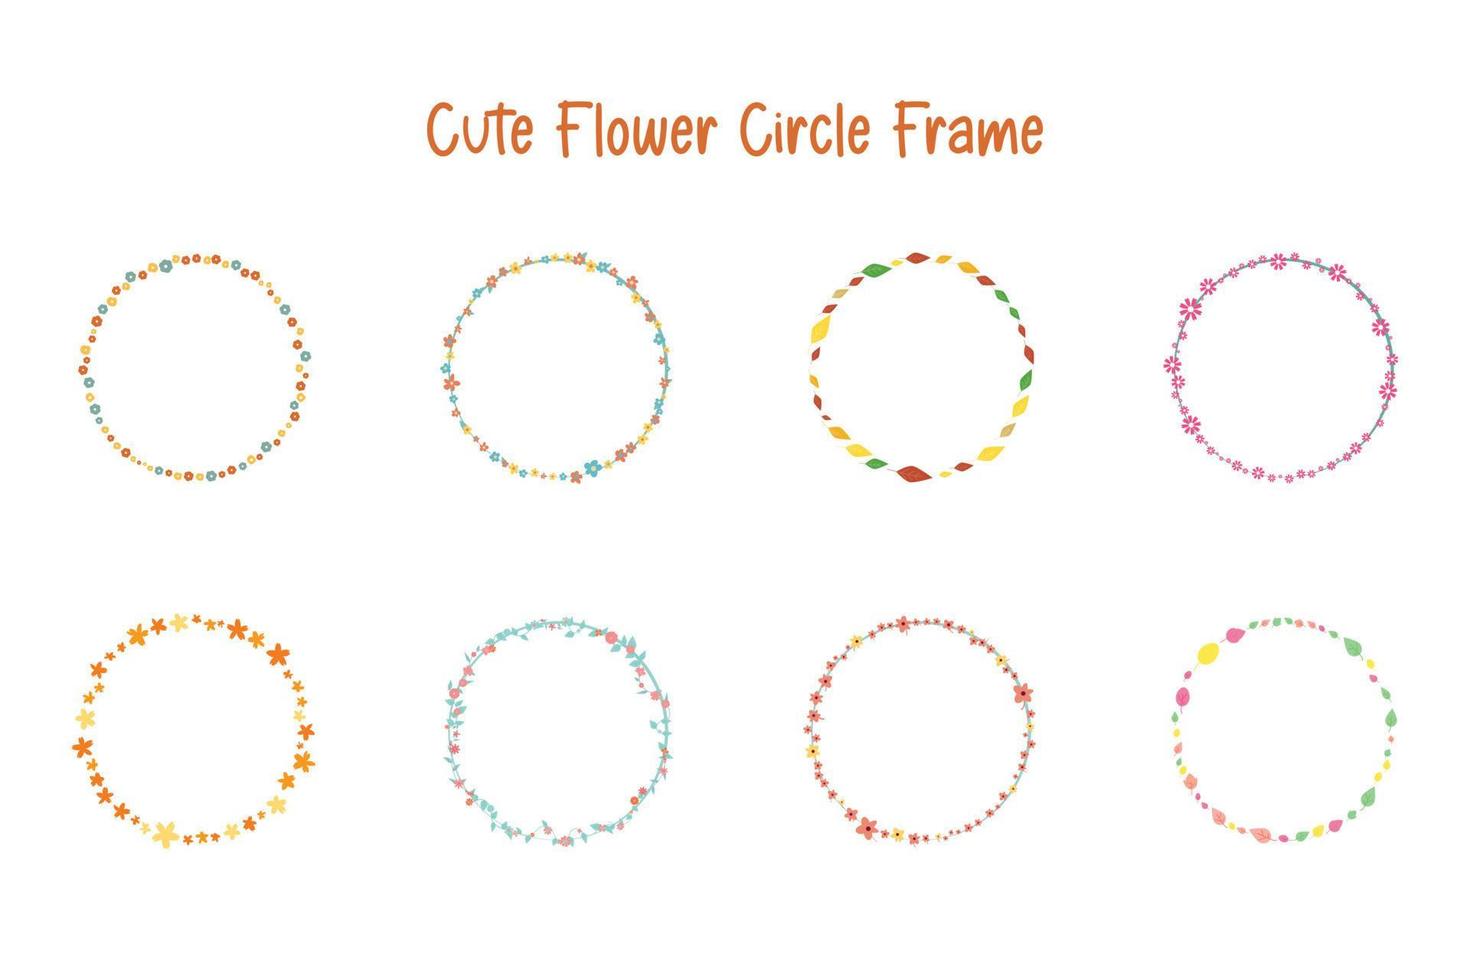 cute flower circle frame border design element set for decoration or banner vector